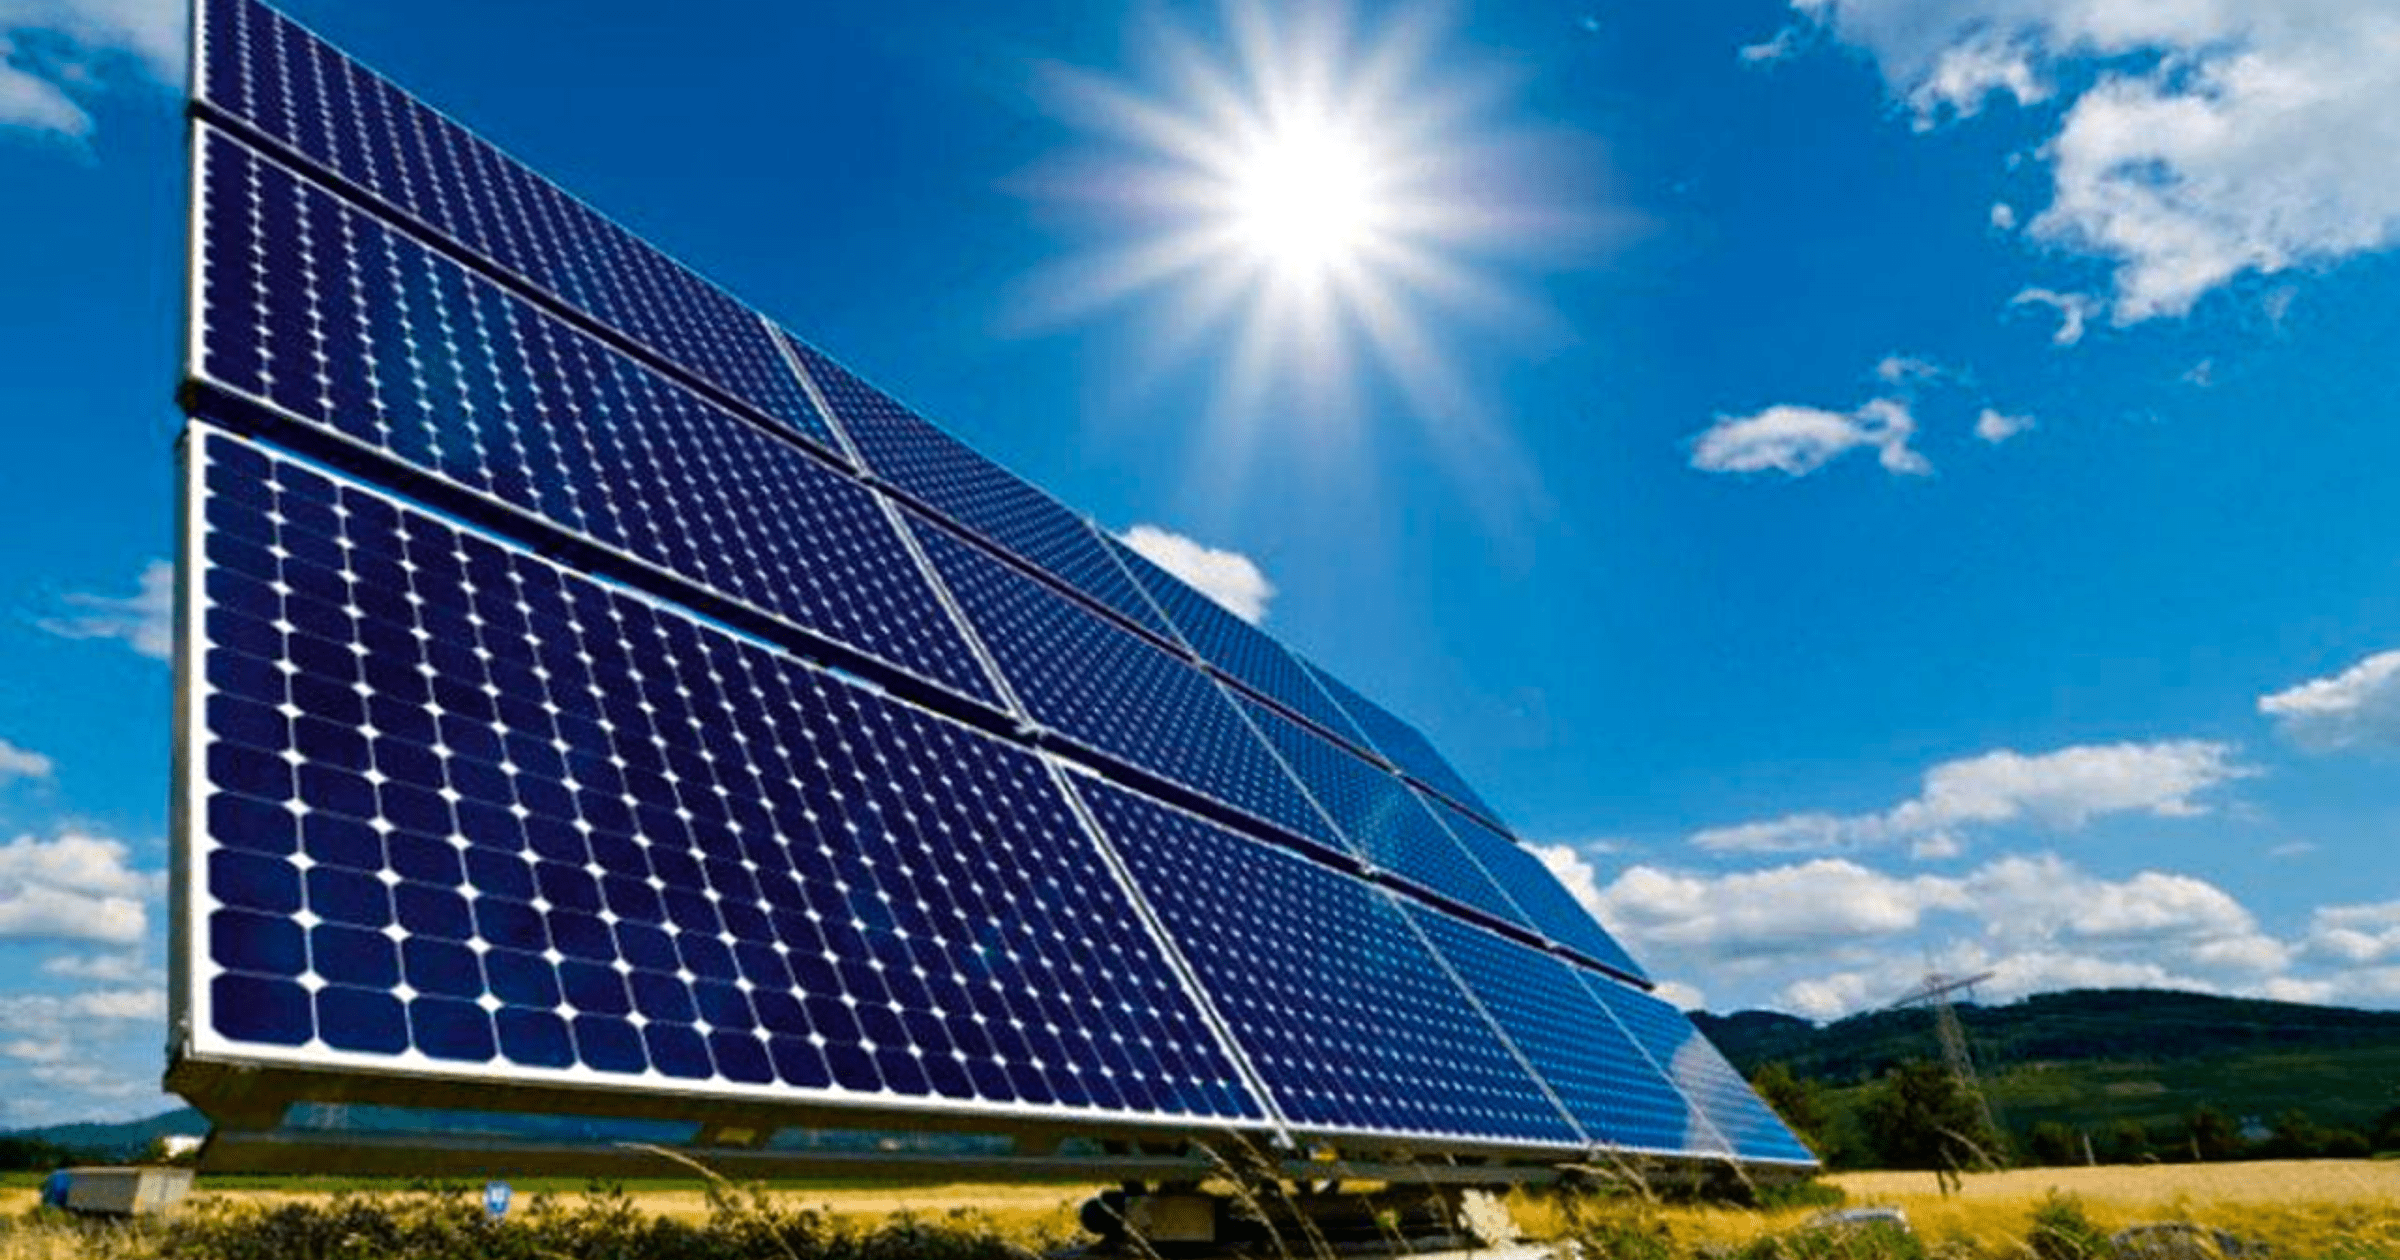 ЕАБР профинансирует строительство первой солнечной станции в Кыргызстане